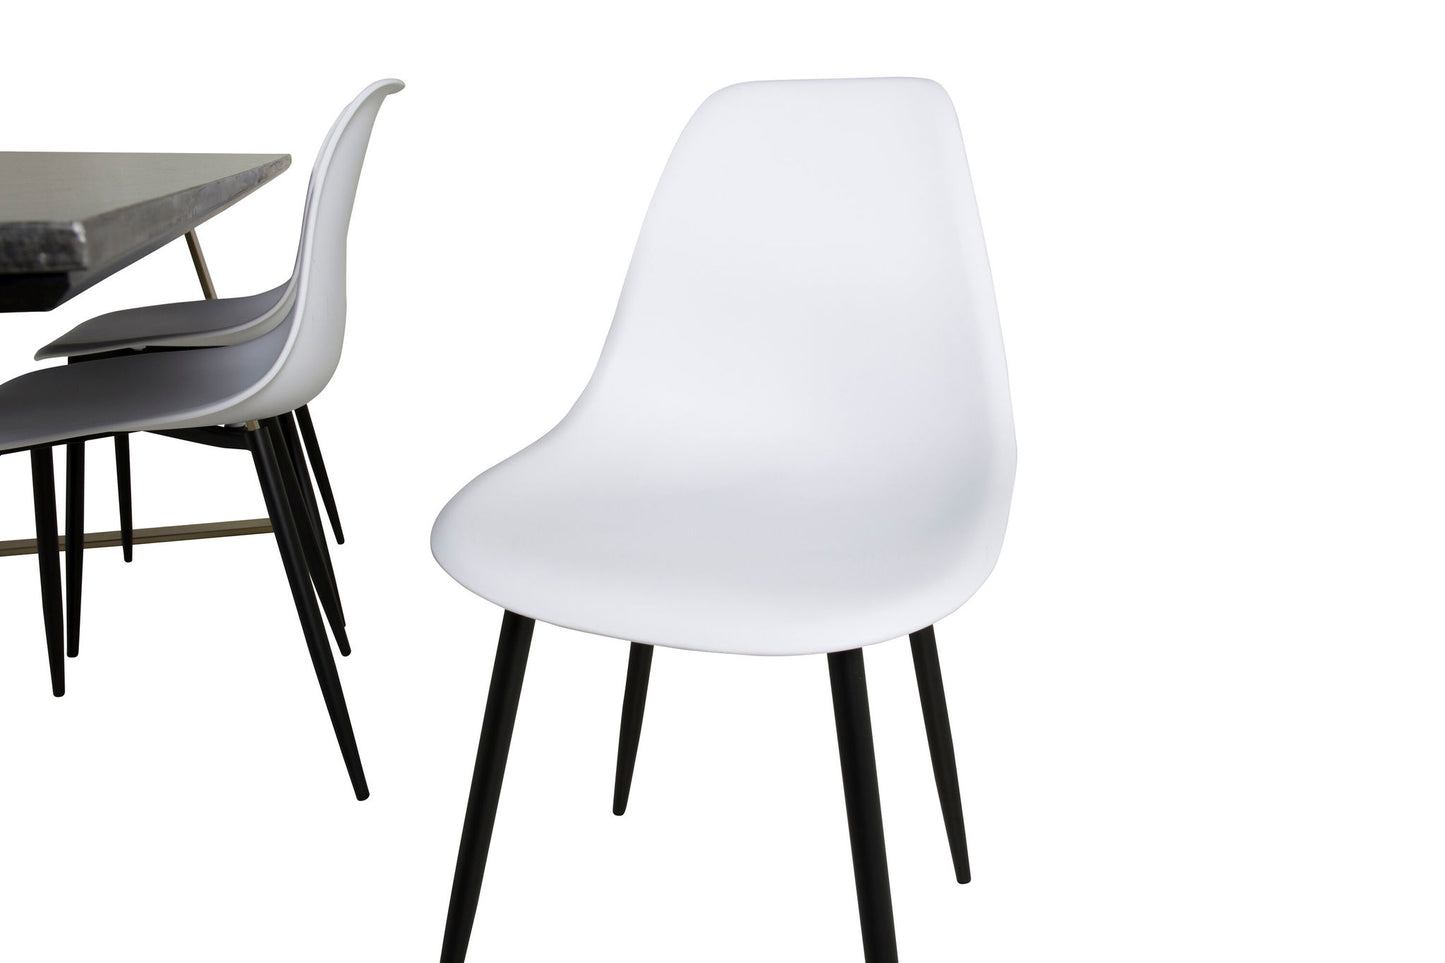 Estelle - Spisebord, 200*90*H76 - Grå / Messing+ Polar Plast Spisebordsstol - Sorte ben / Hvid Plast